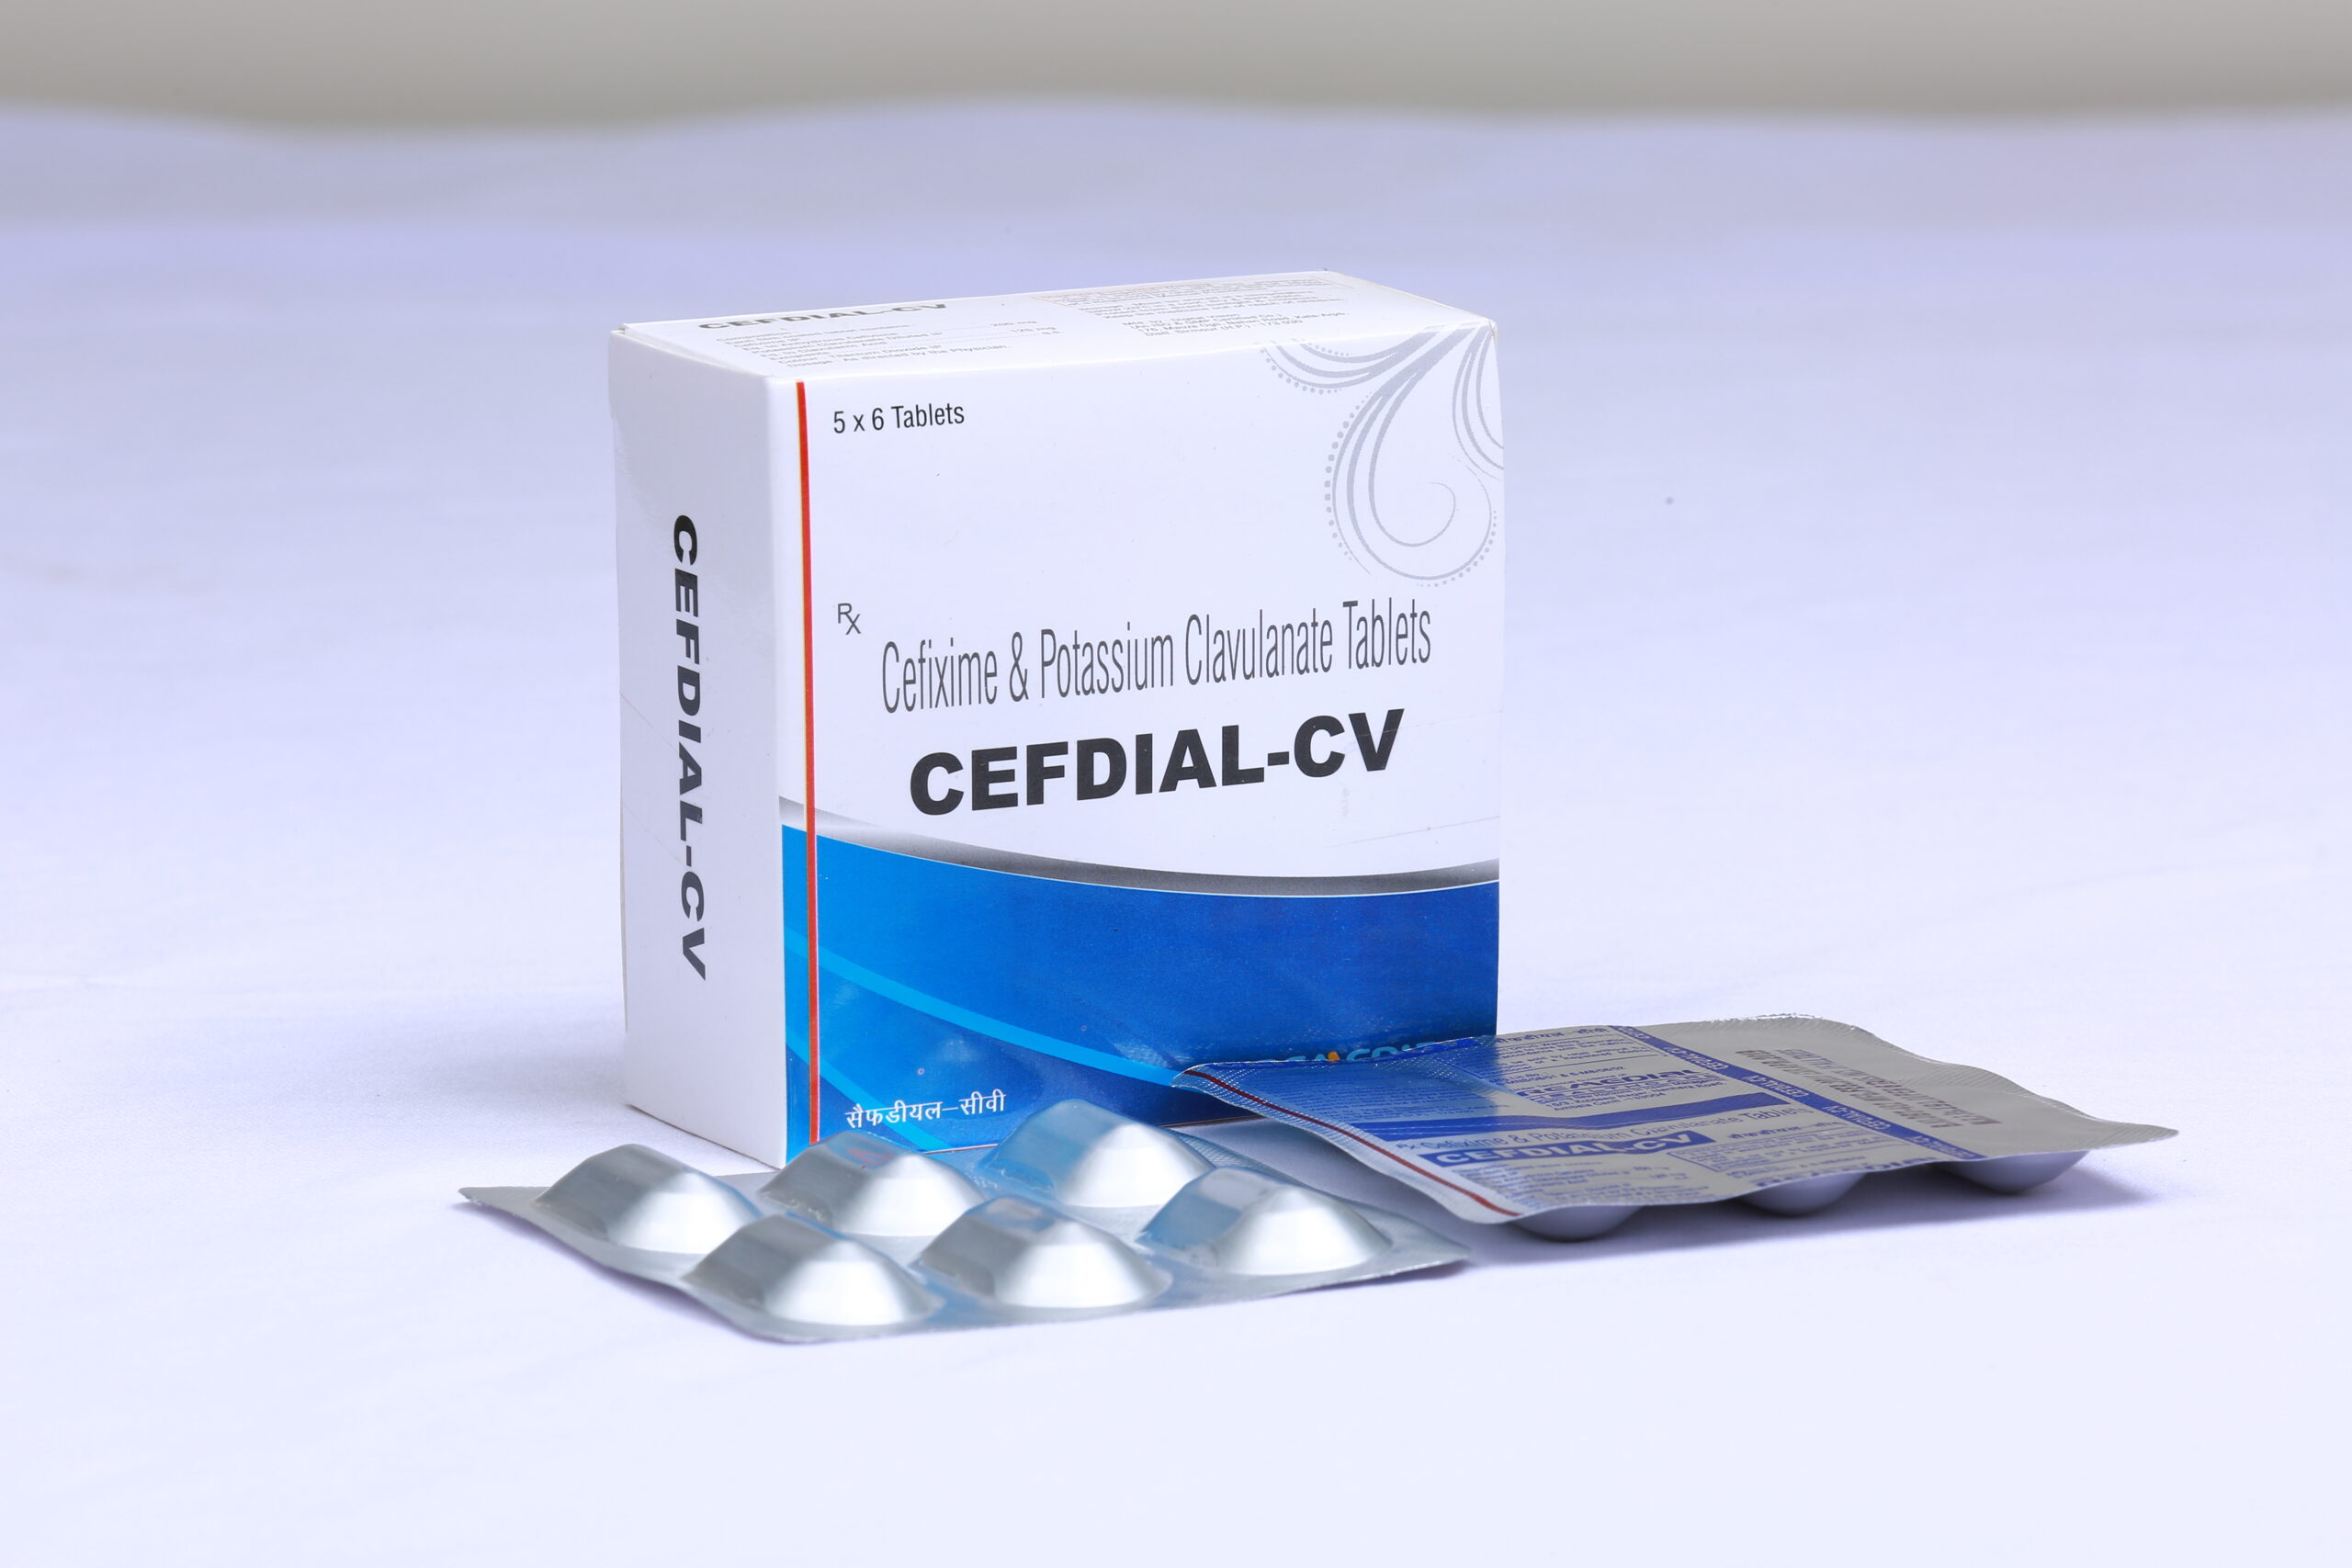 CEFDIAL-CV (Cefixime 200mg + Clavulanate Potassium 125mg)